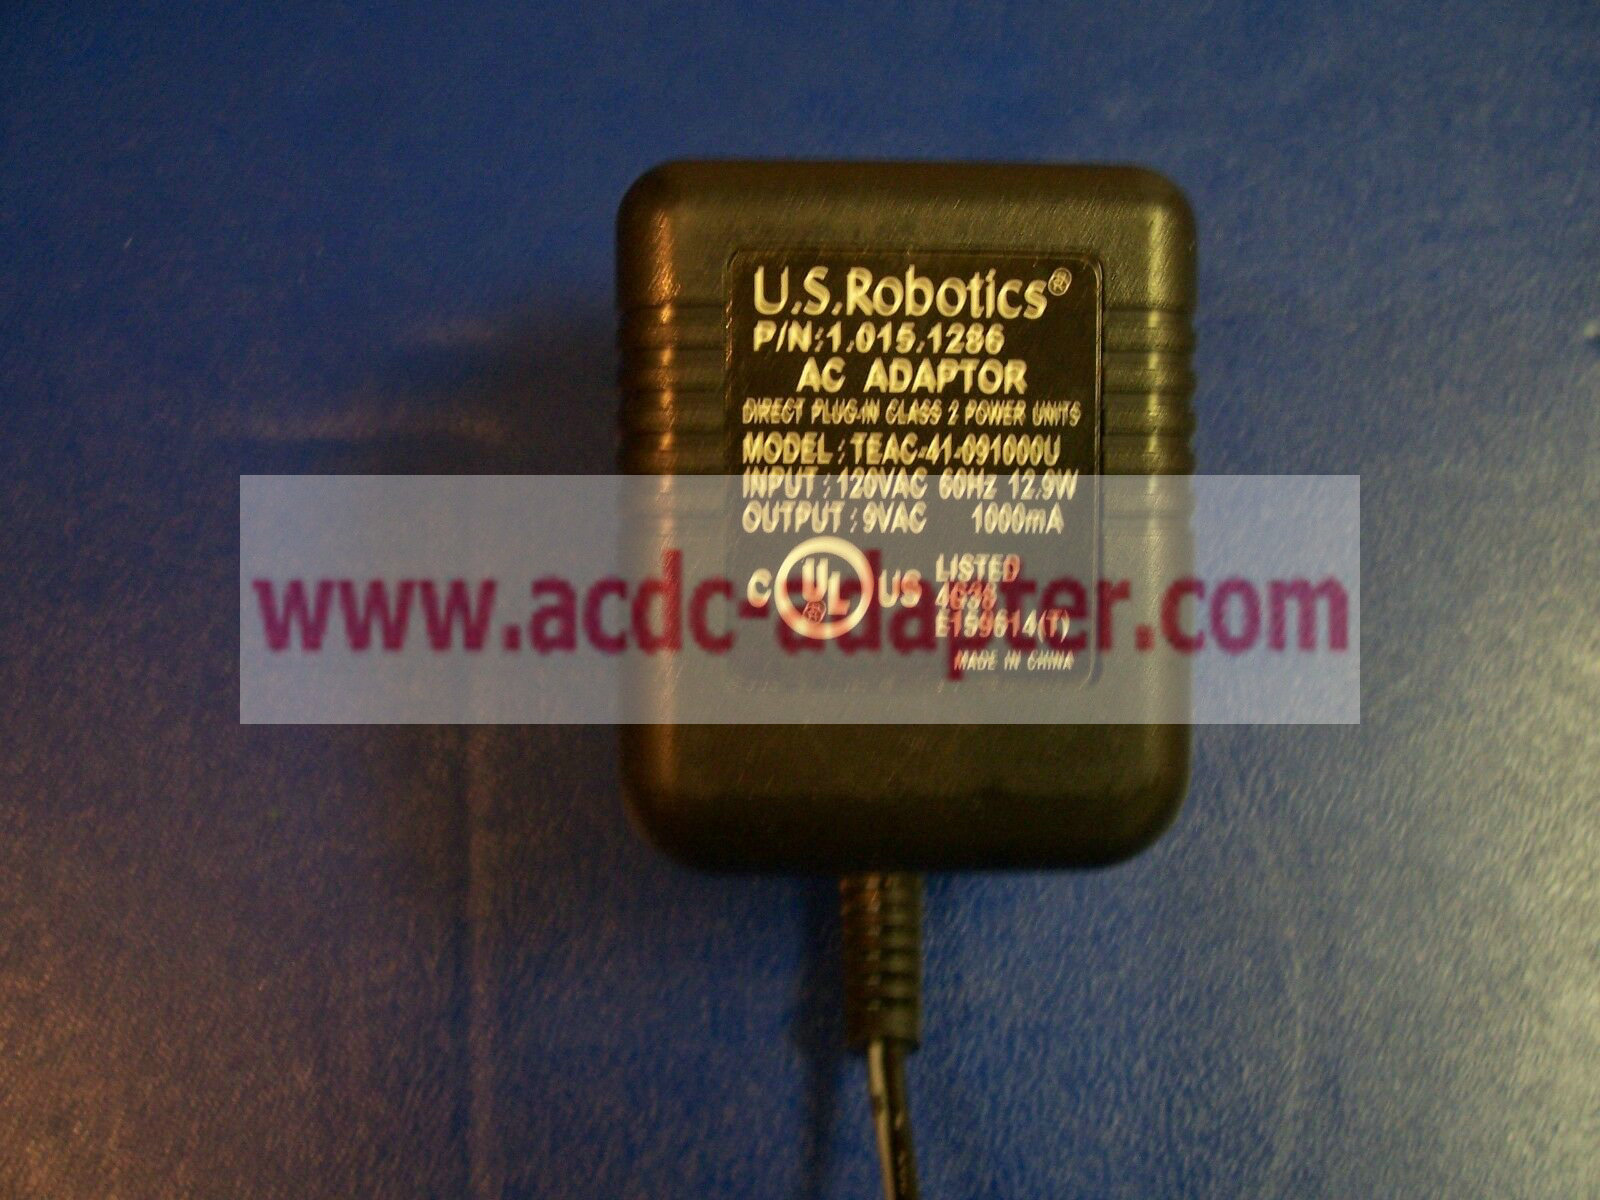 Genuine 9VAC 1000mA 1A 1.015.1286 US Robotics TEAC-41-091000U AC Power Adapter - Click Image to Close